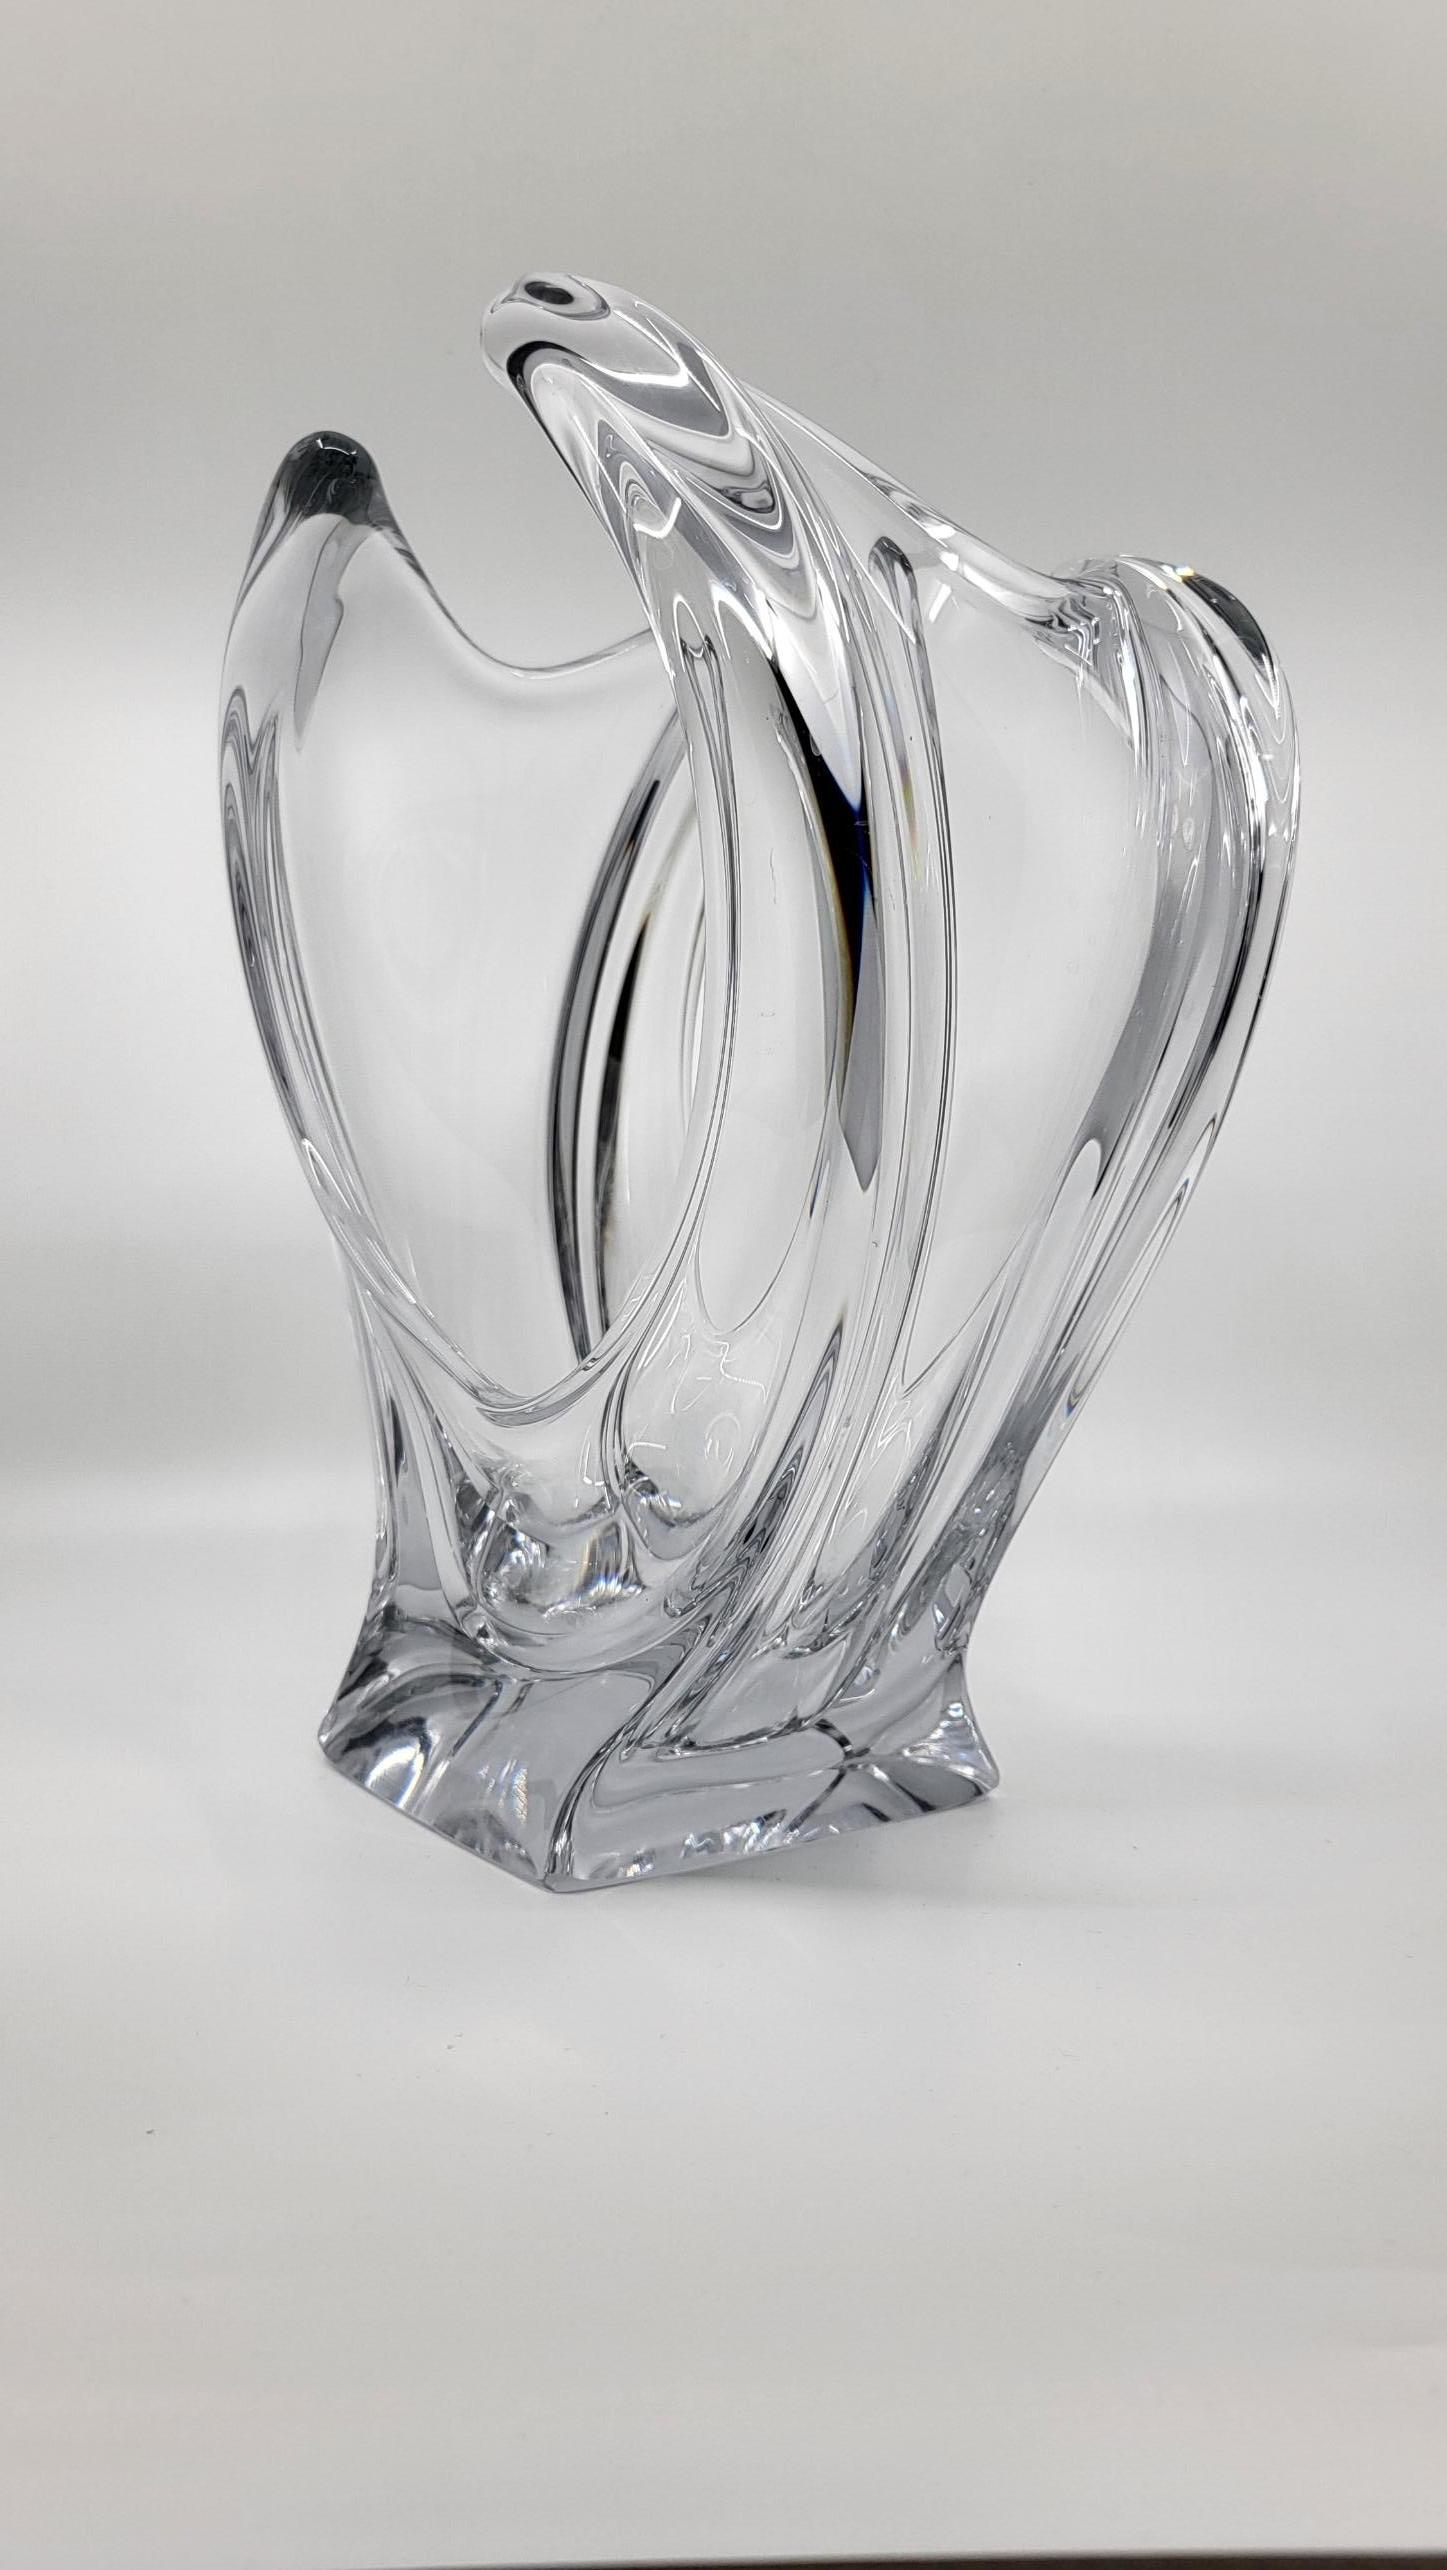 Vase en cristal, qui trouve son originalité dans sa forme peu commune. Il est en état parfait et peut également faire coupe à fruits ce qui donne la possibilité de pouvoir l'admirer dans une cuisine.